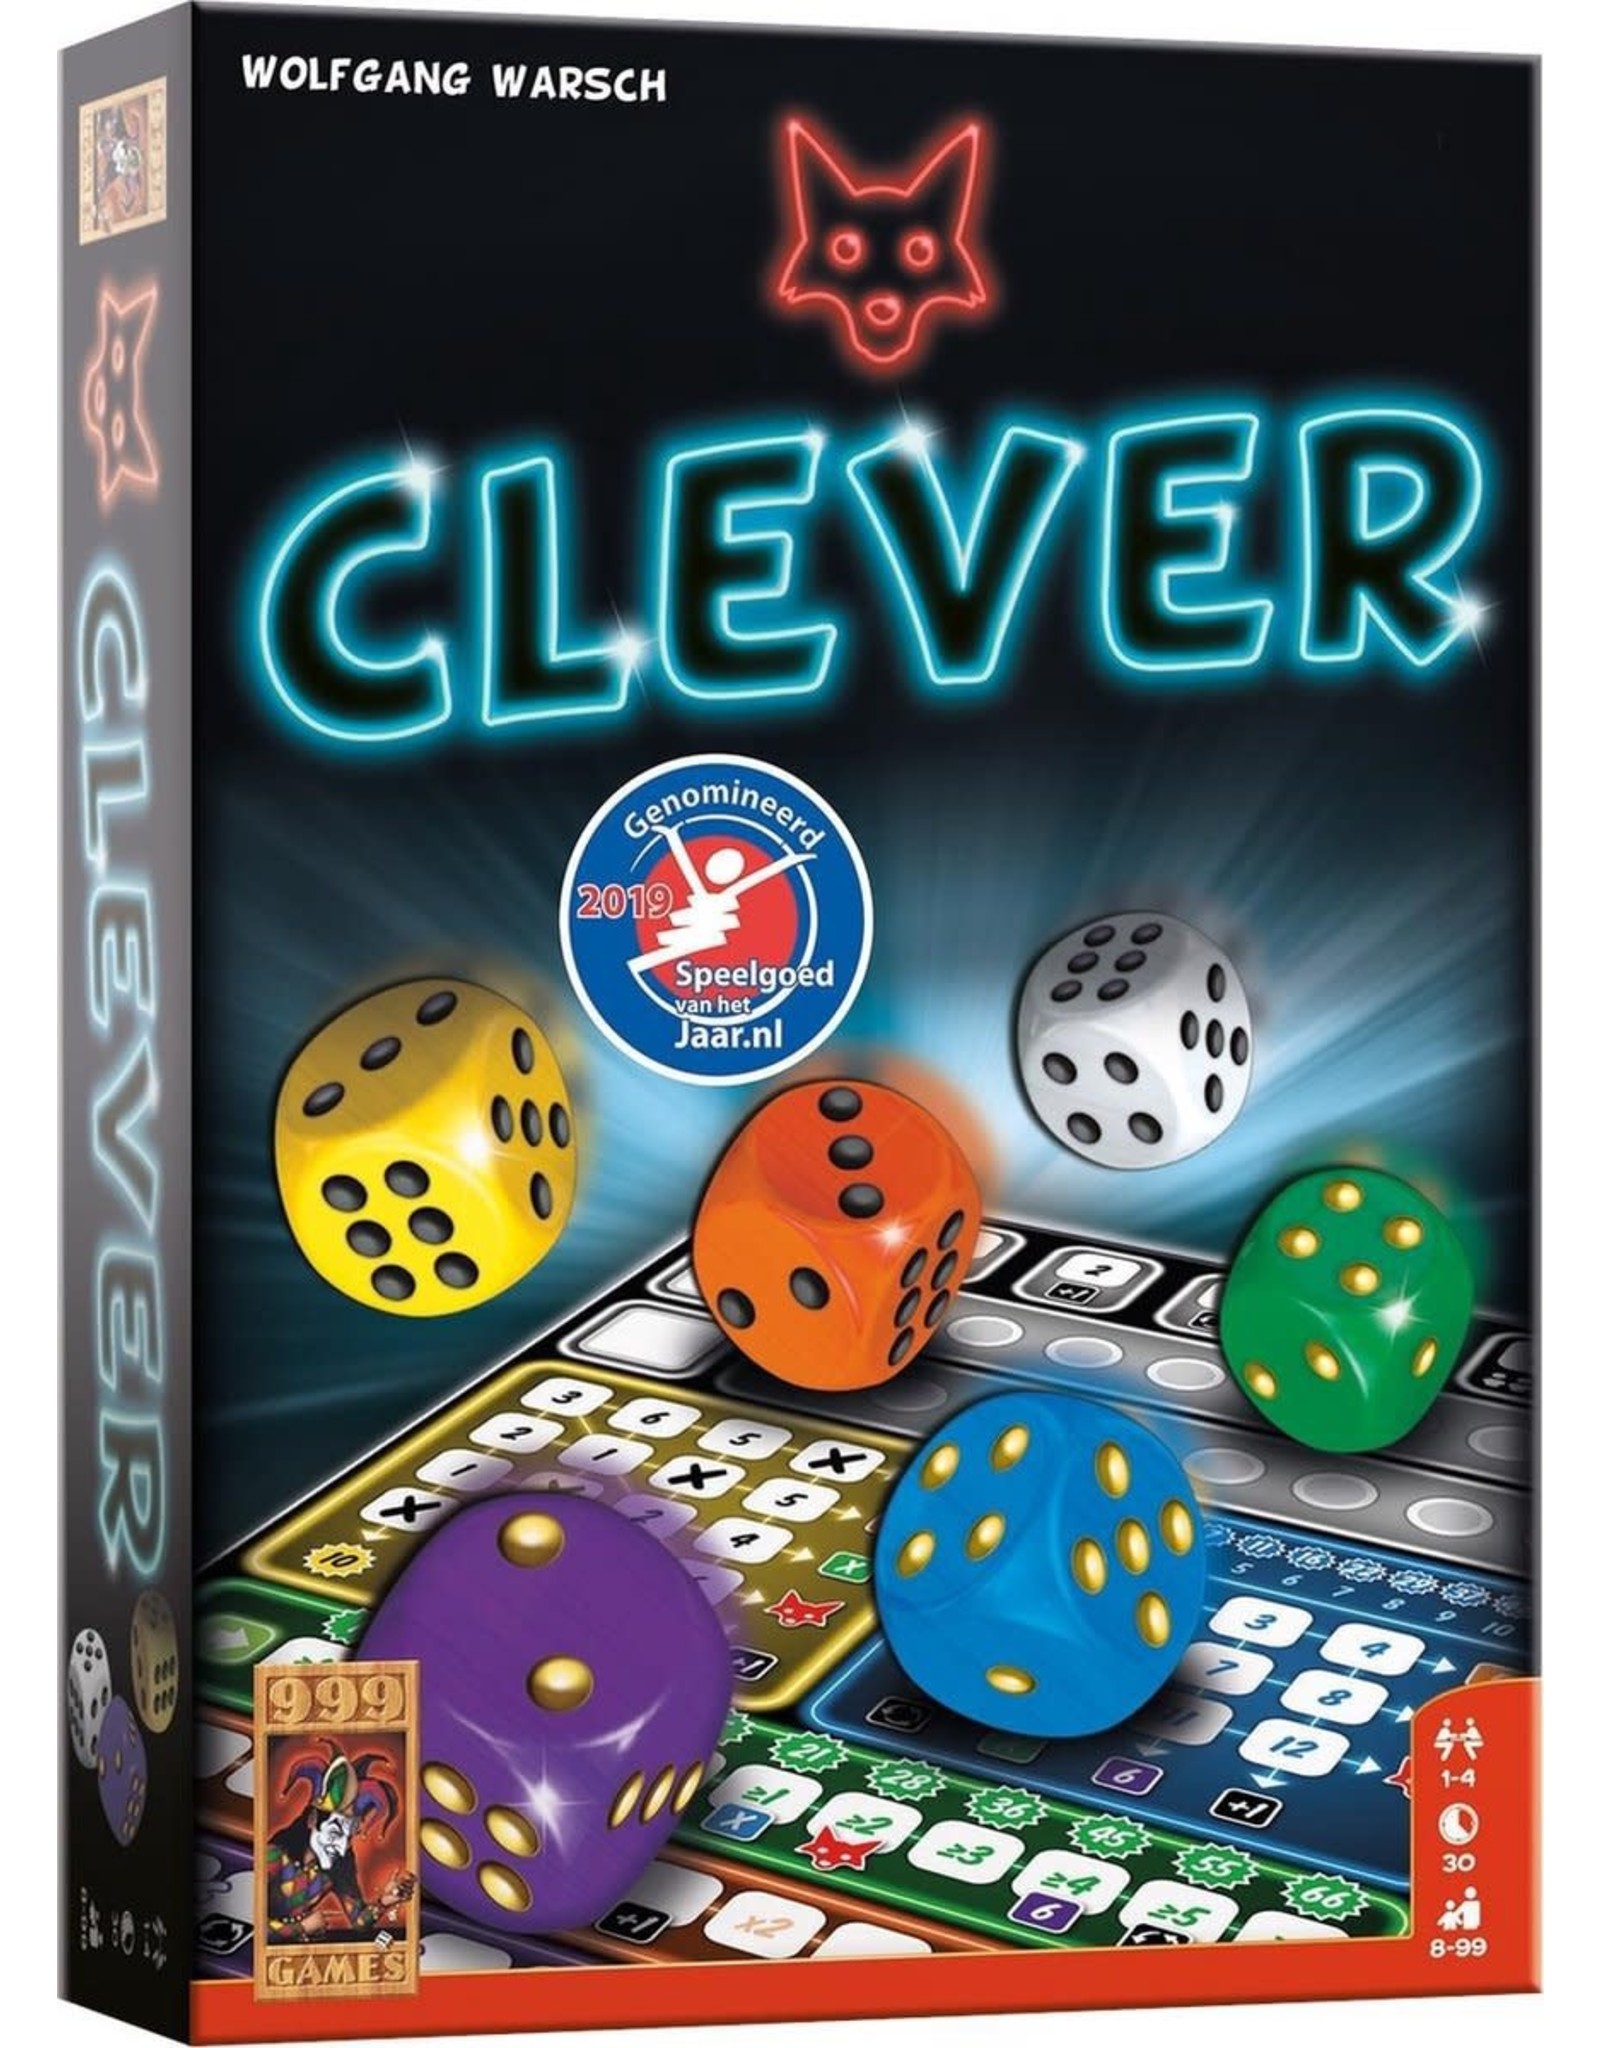 999 GAMES Clever - Dobbelspel